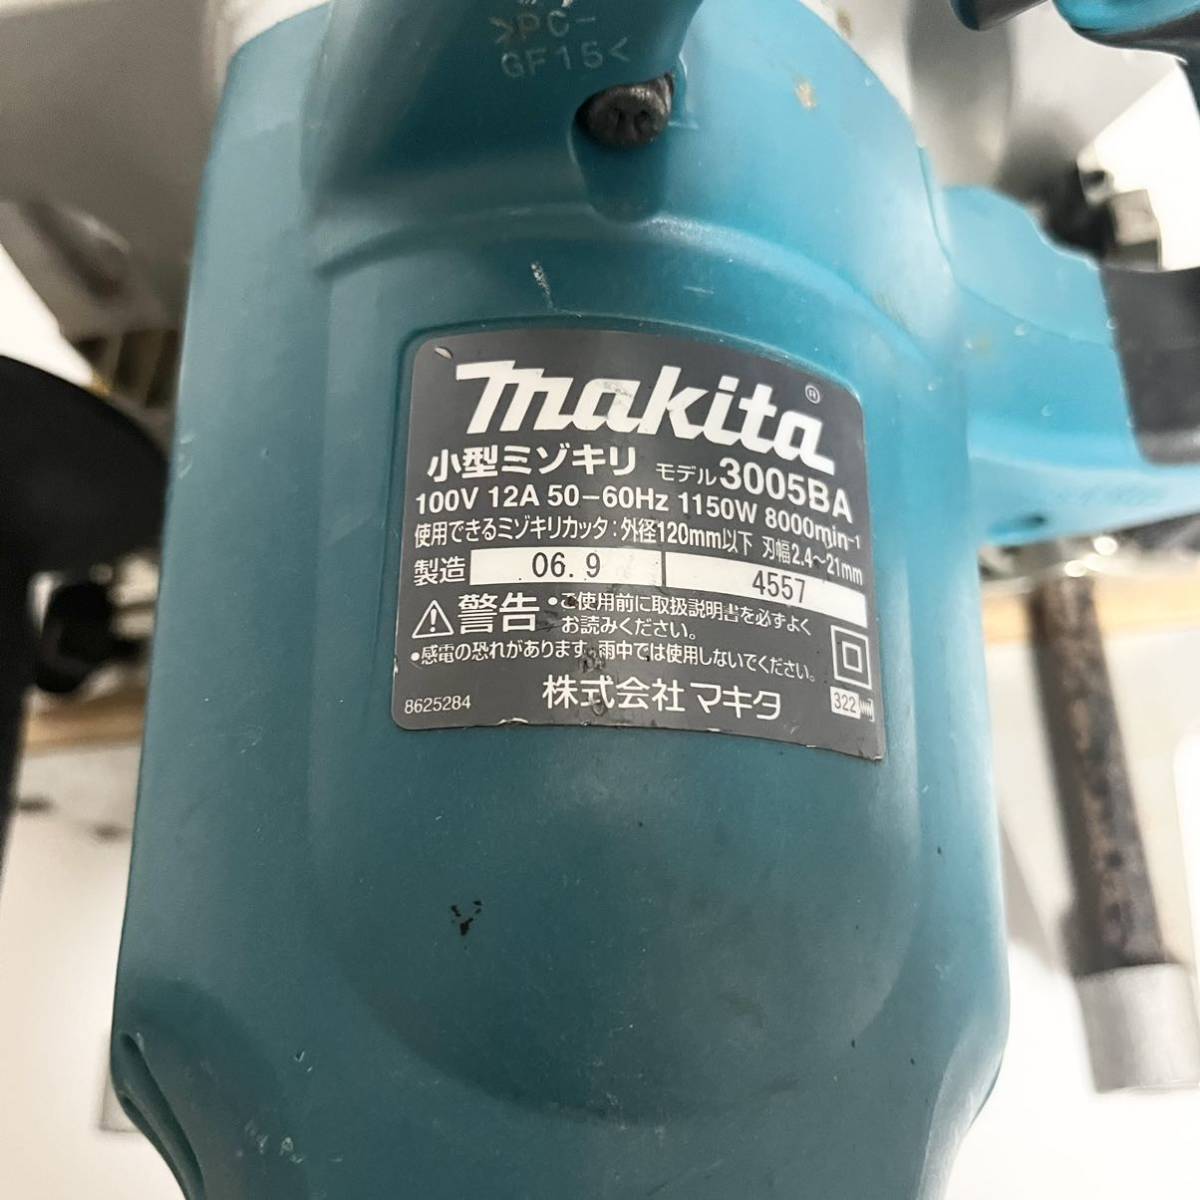 マキタ 100V 小型ミゾキリ 3005BA Makita 電動工具 電動工具